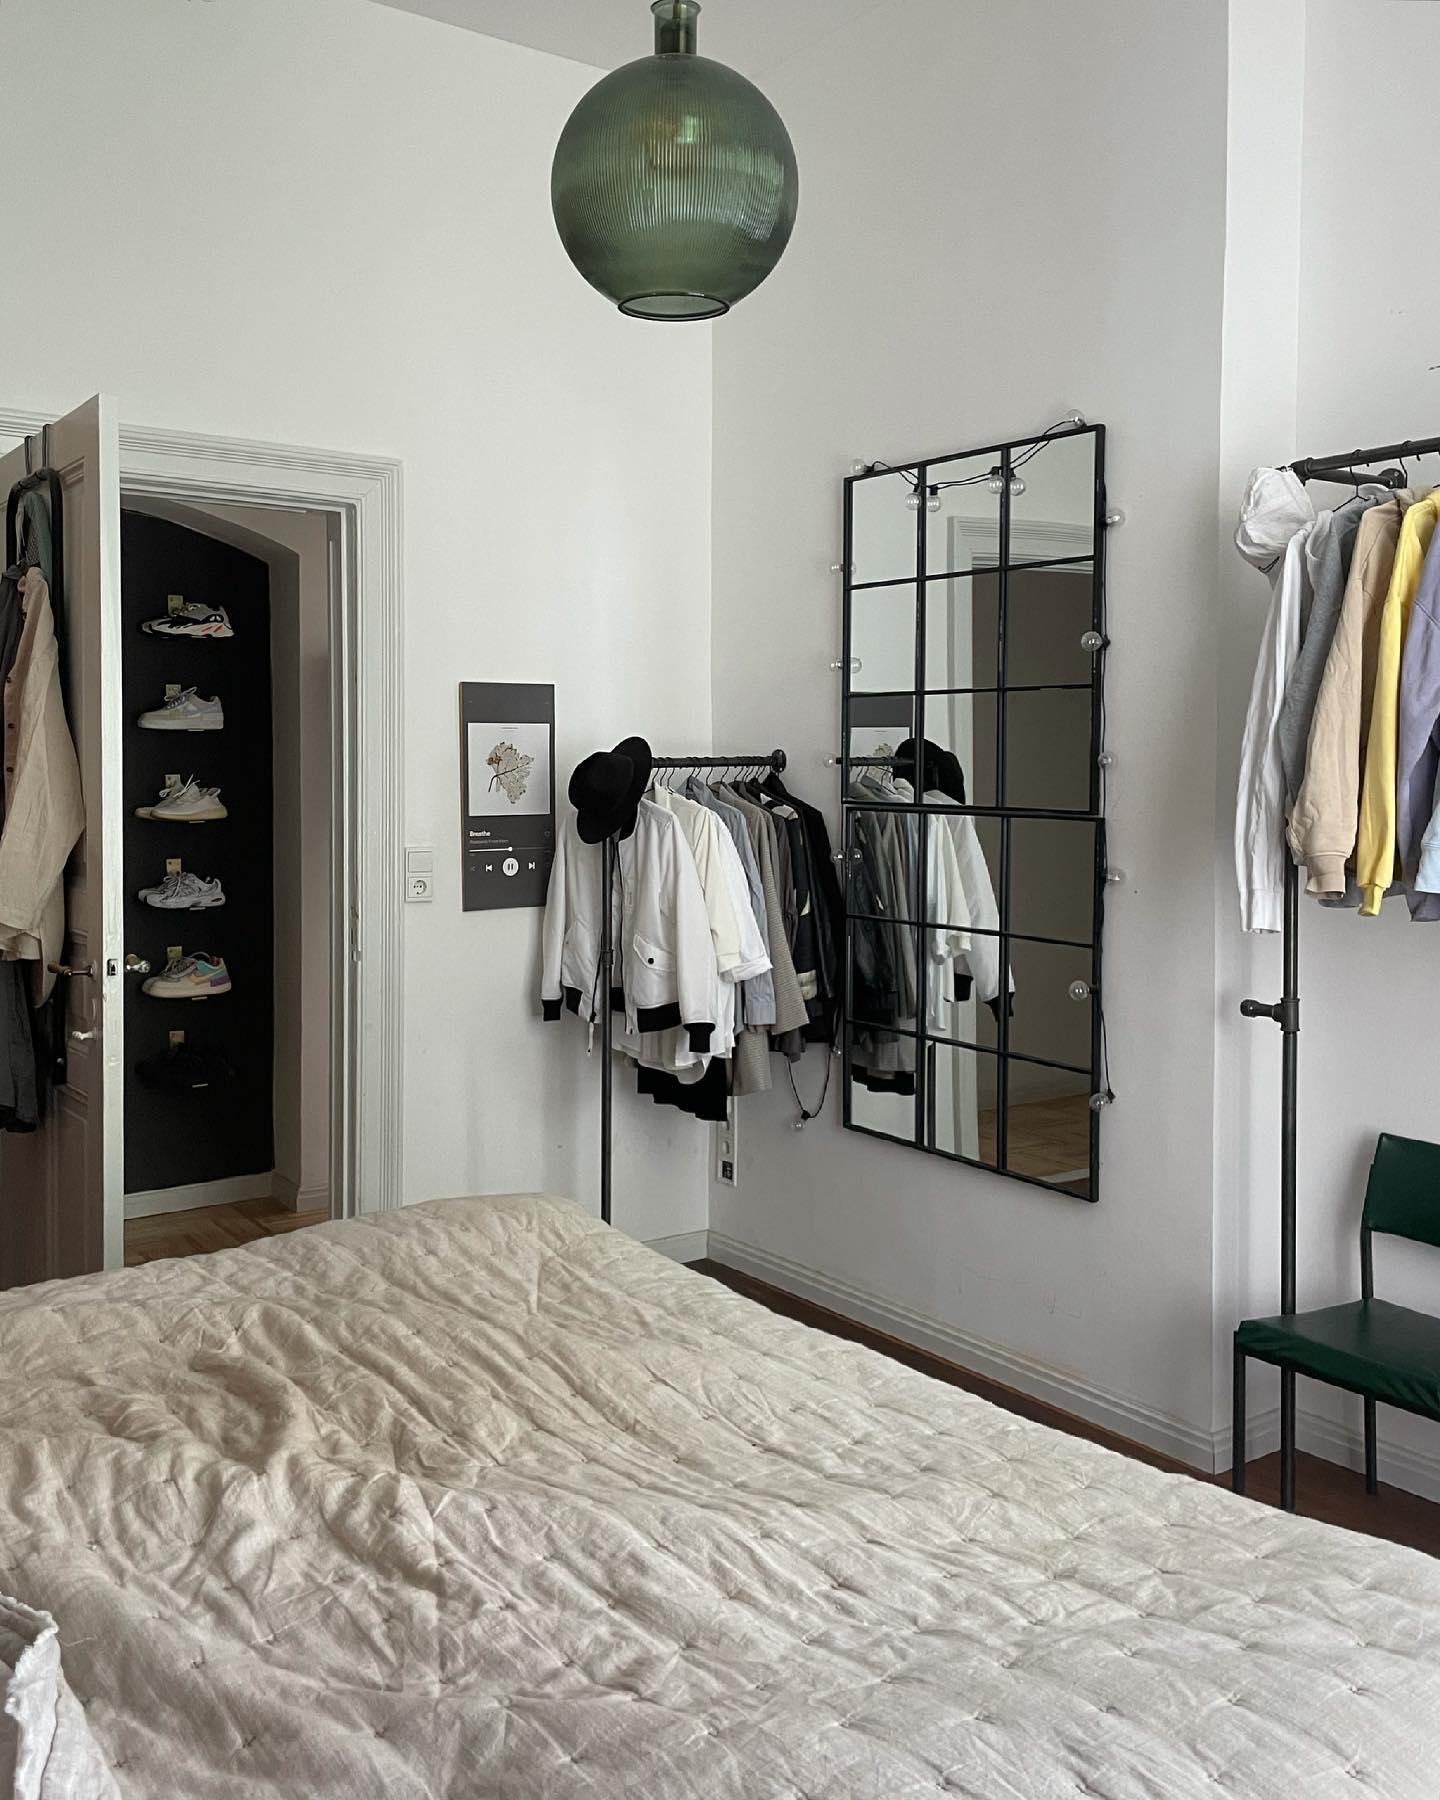 Schlafzimmer + Sneakerwall 👟
#sneaker #schlafzimmer #garderobe #kleiderschrank #bedroom #mybdrm